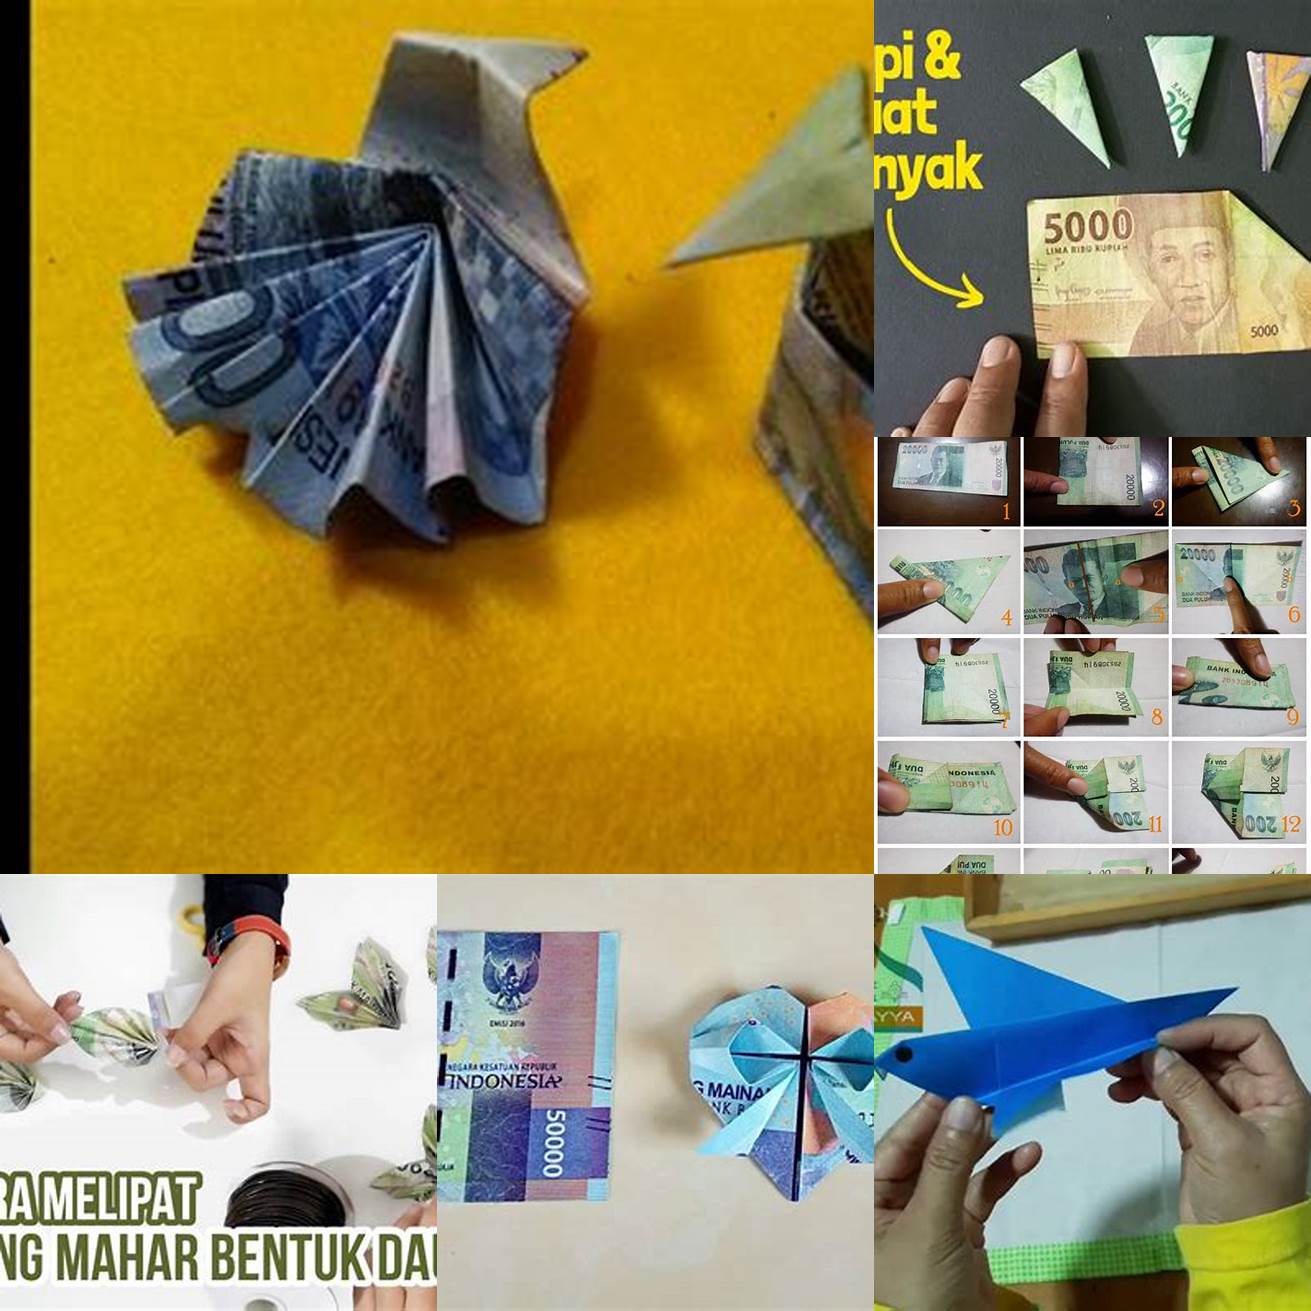 Cara melipat uang kertas menjadi bentuk burung